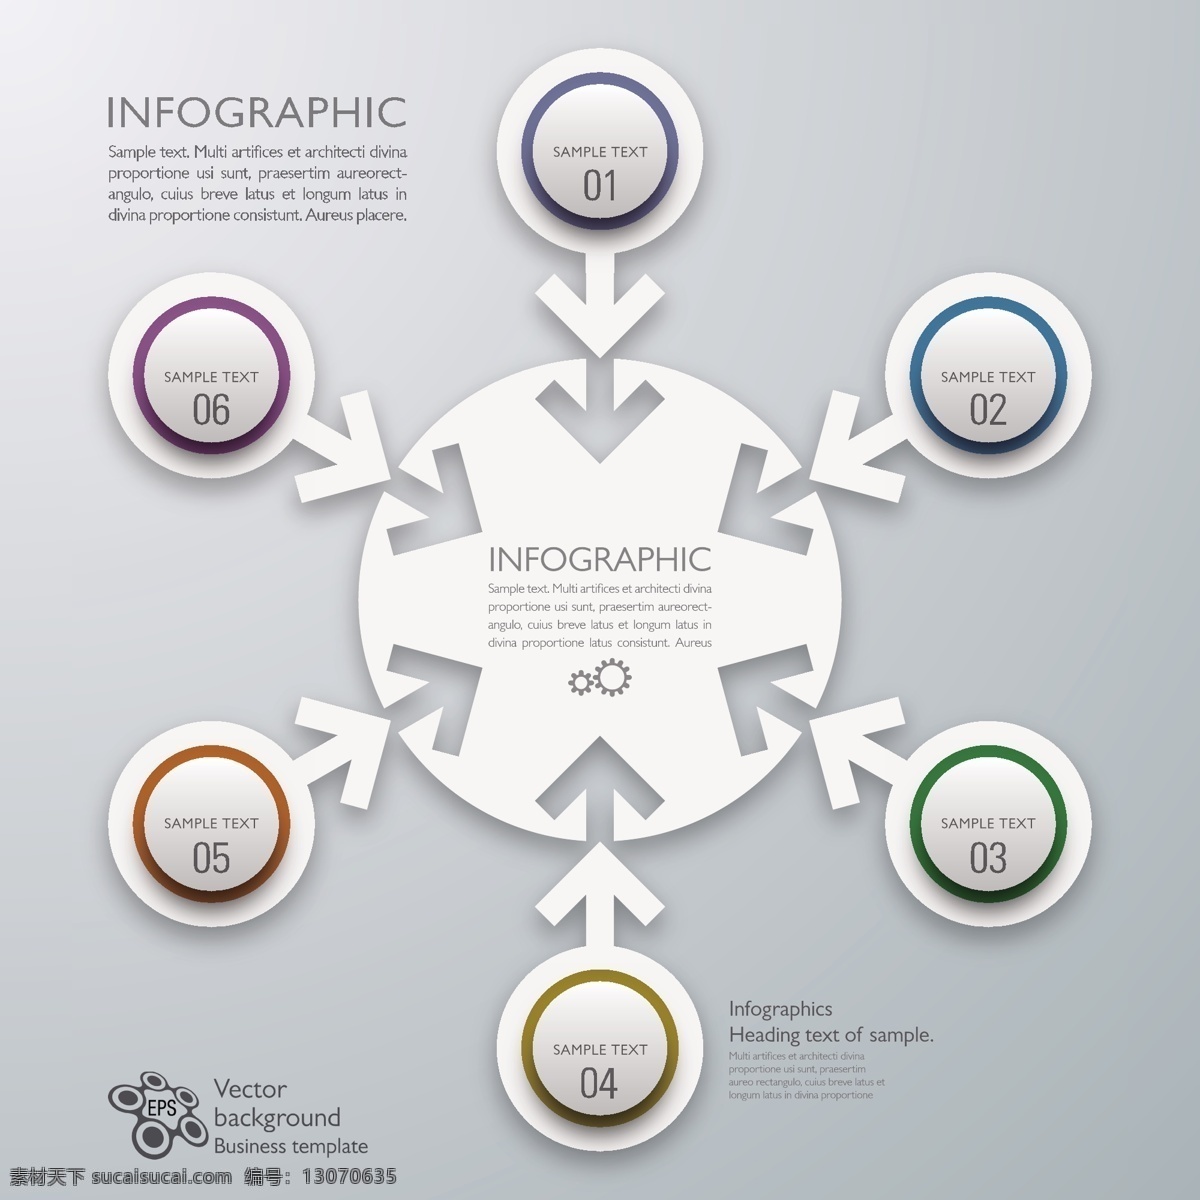 箭头 圆环 图表 目录设计 图标设计 办公学习 生活百科 矢量素材 白色